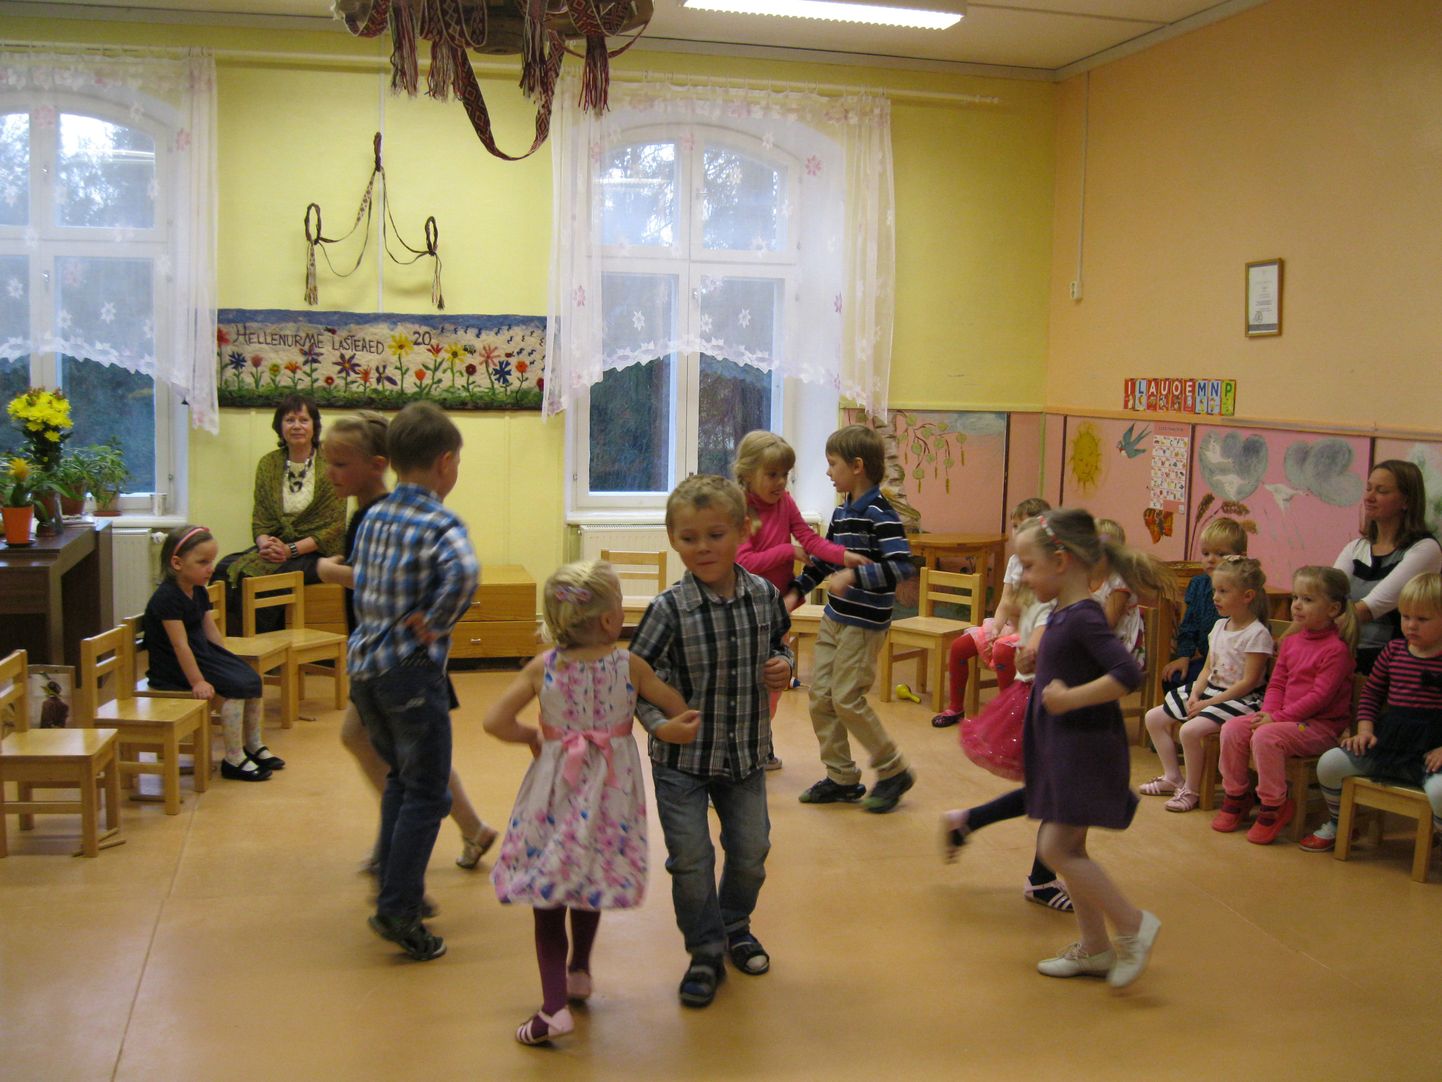 Hellenurme hooldekodu-lastepäevakodu avati oktoobris 20 aastat tagasi endises mõisahoones – ruumides, kus varem tegutses lastekodu. Nüüd pidasid lapsed lasteaia sünnipäevapidu.